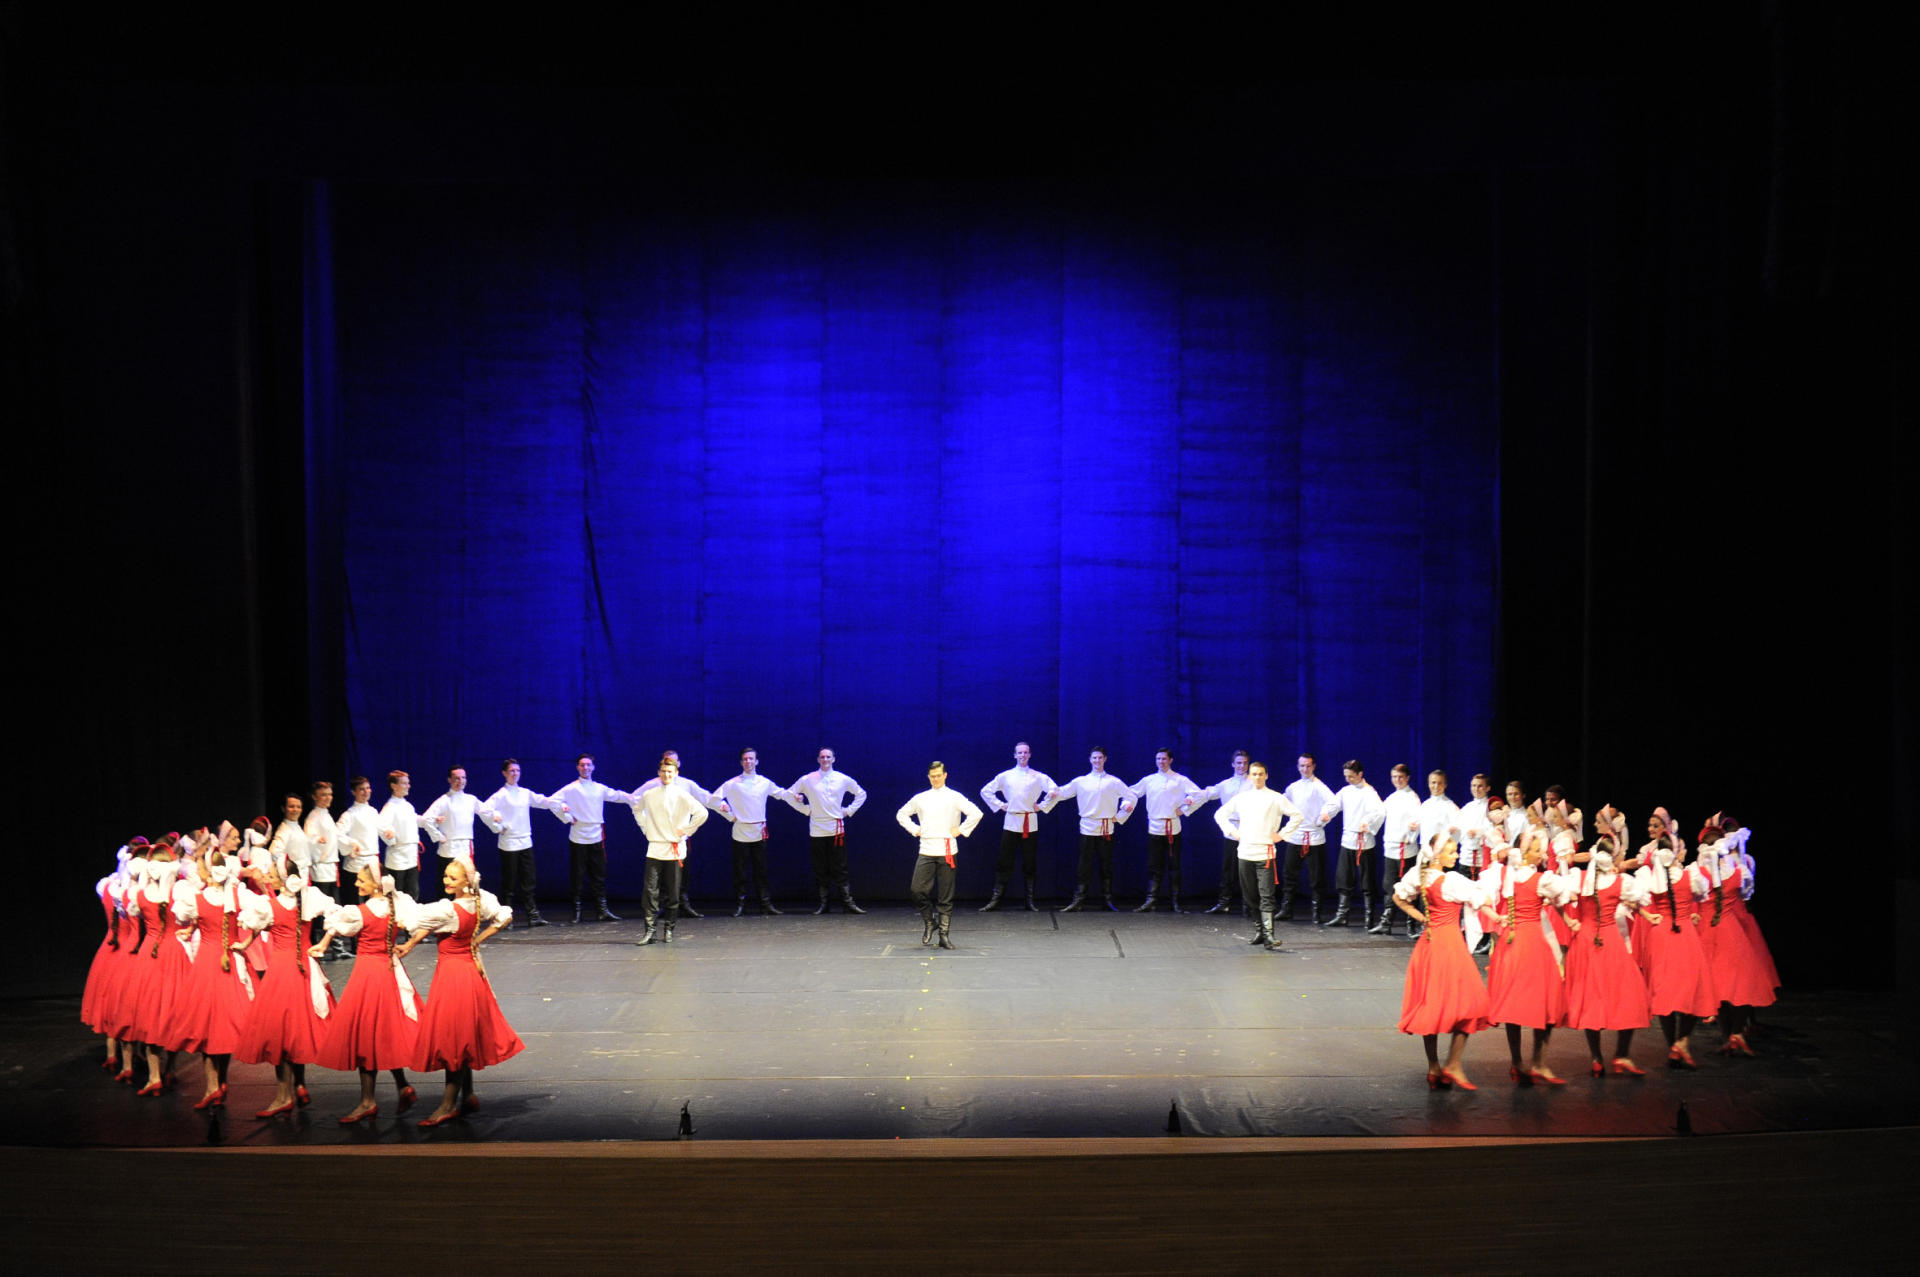 В Центре Гейдара Алиева завершилась трехдневная концертная программа Академического ансамбля народного танца им. Игоря Моисеева (ФОТО)